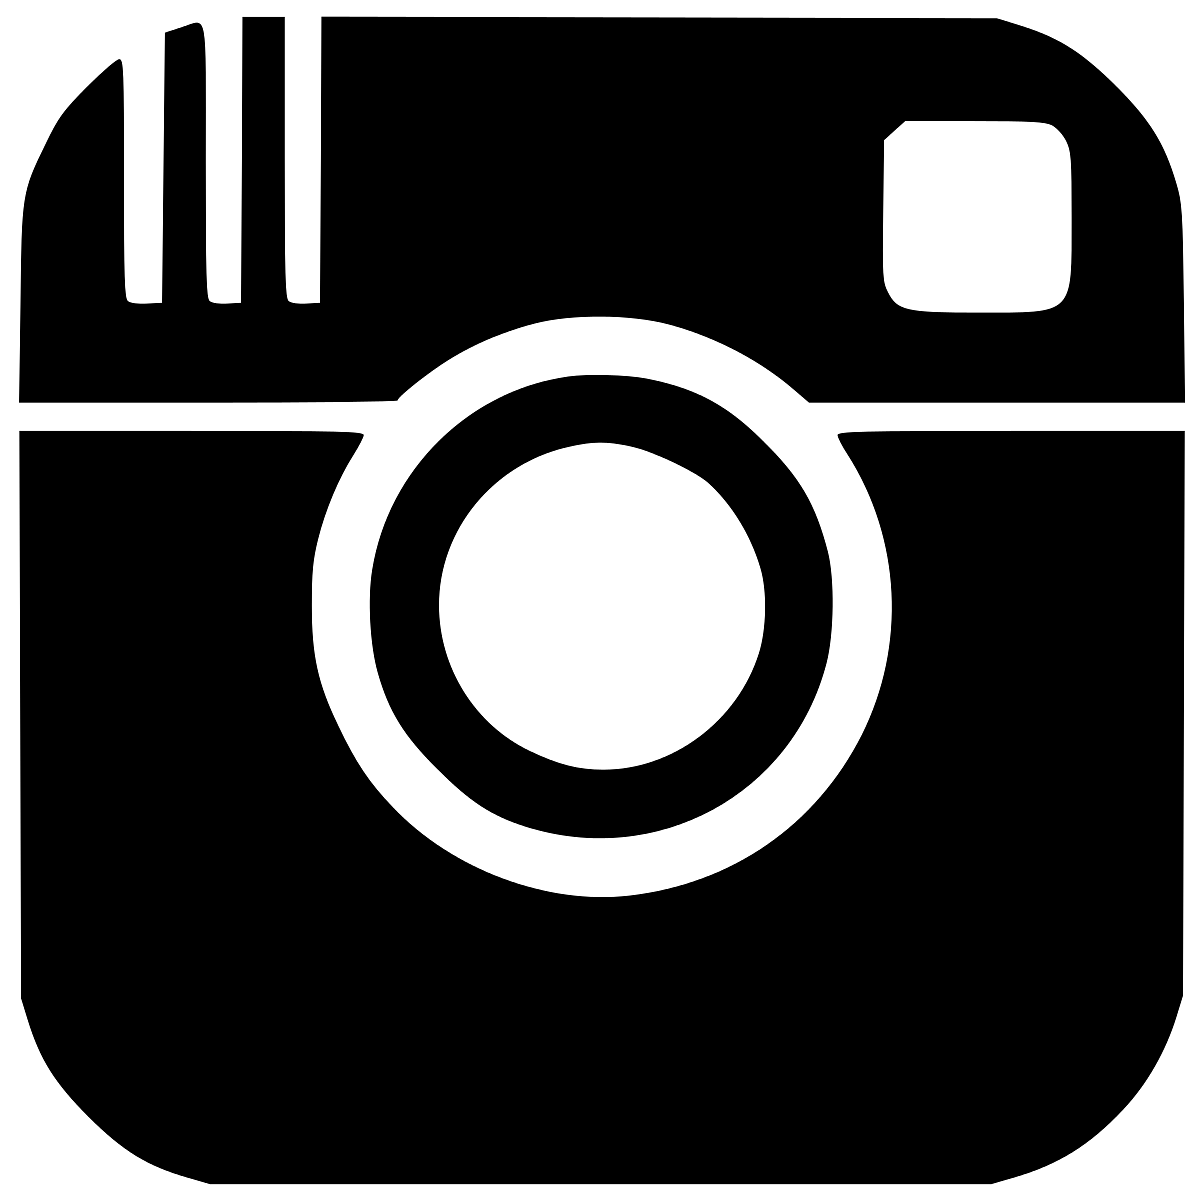 Download PNG image - Instagram Logo Transparent Background 